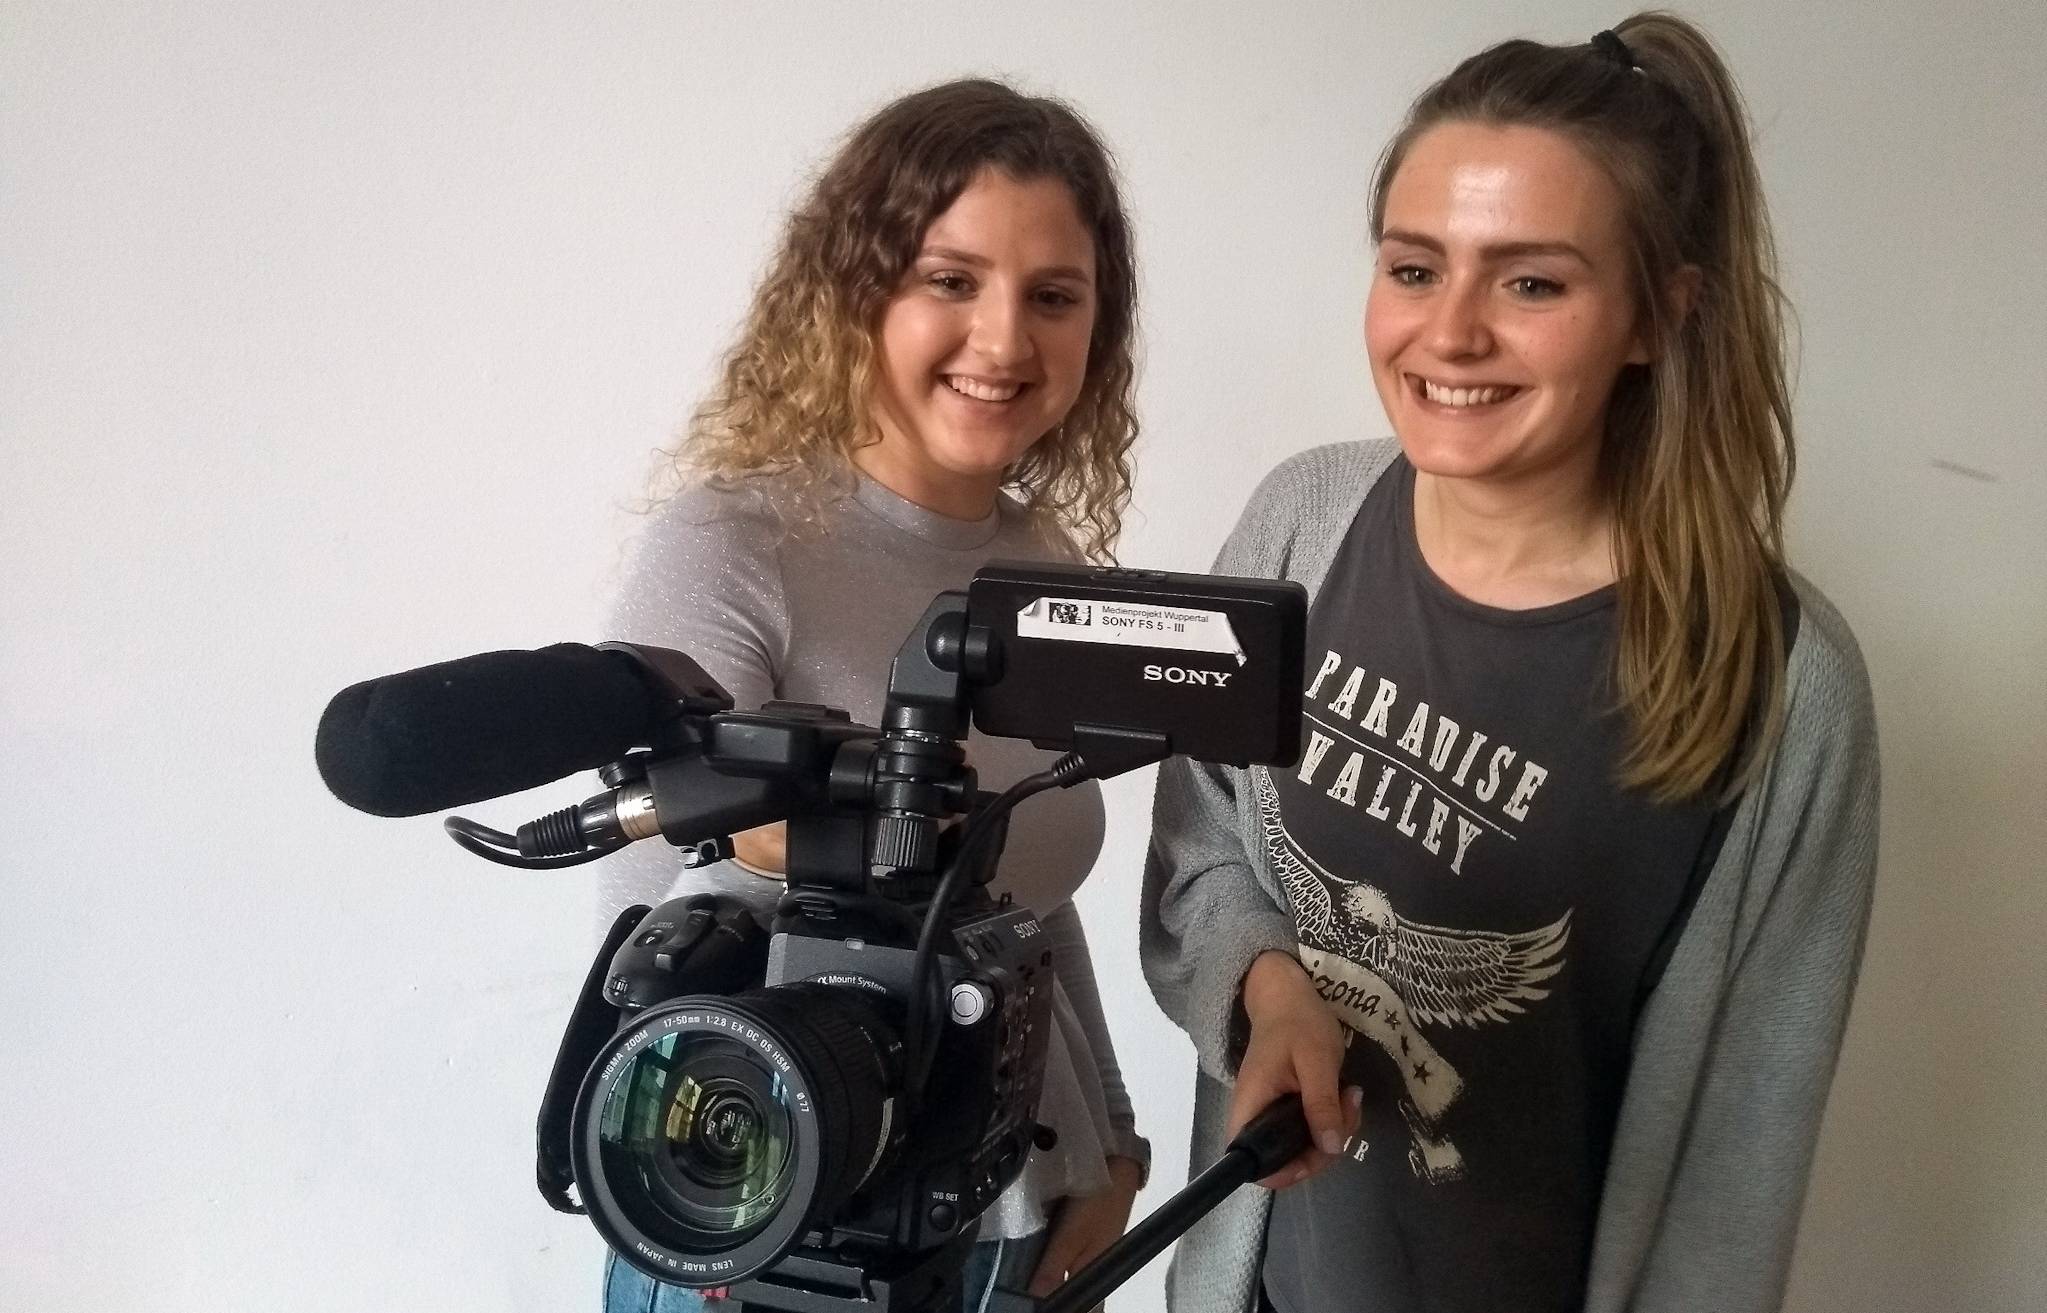  Lotta Zirkenbach und Christina Schmitz, Praktikantinnen des Medienprojekts, möchten mit ihren Filmen Probleme zum Thema machen. 